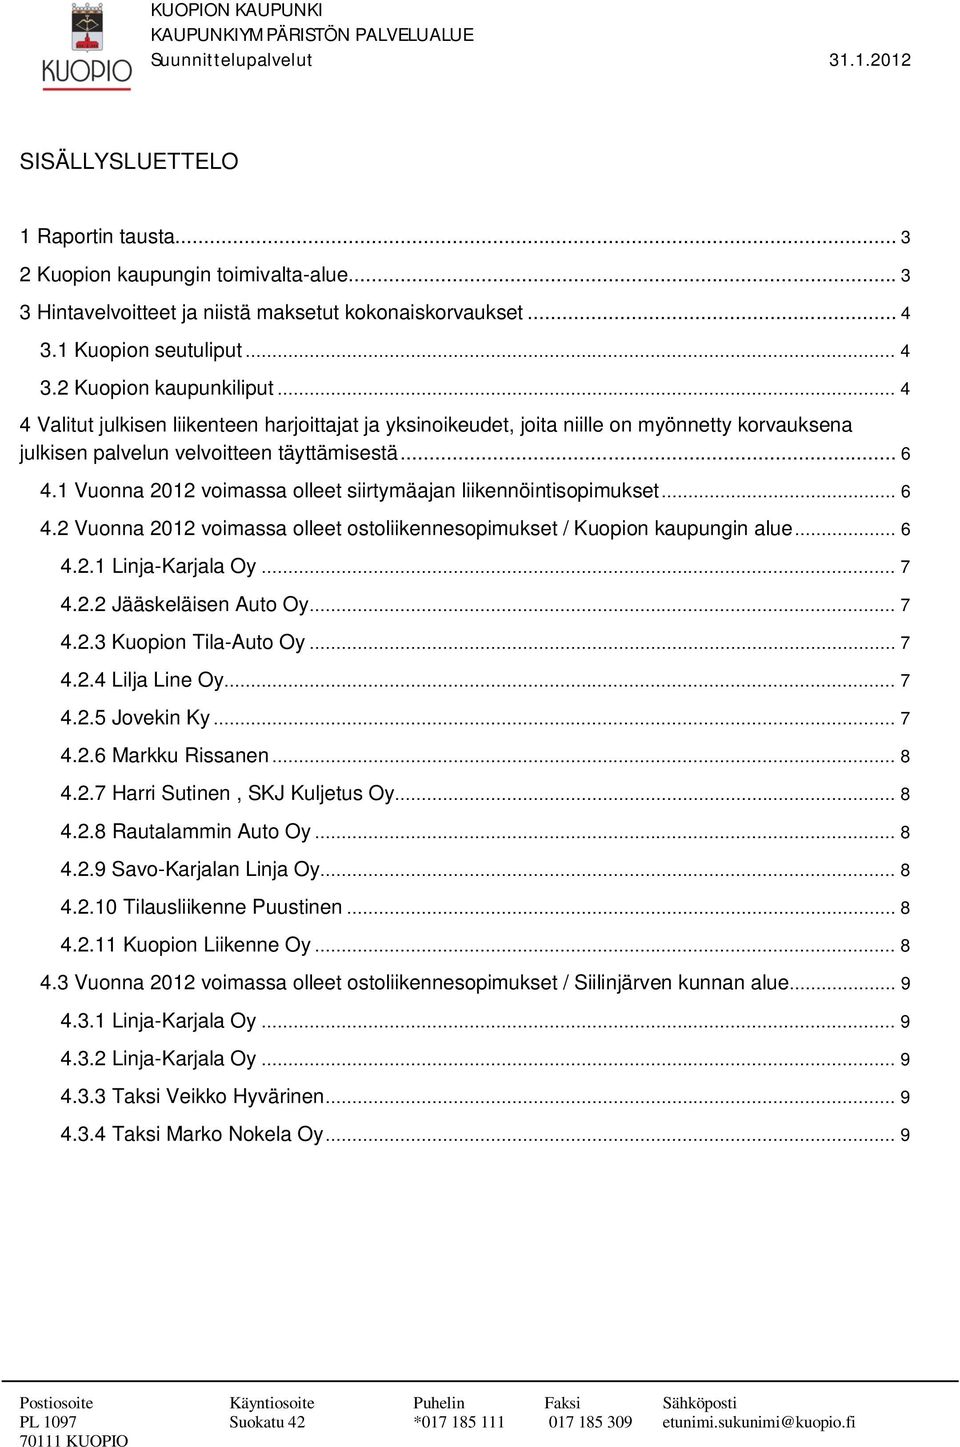 1 Vuonna 2012 voimassa olleet siirtymäajan liikennöintisopimukset... 6 4.2 Vuonna 2012 voimassa olleet ostoliikennesopimukset / Kuopion kaupungin alue... 6 4.2.1 Linja-Karjala Oy... 7 4.2.2 Jääskeläisen Auto Oy.